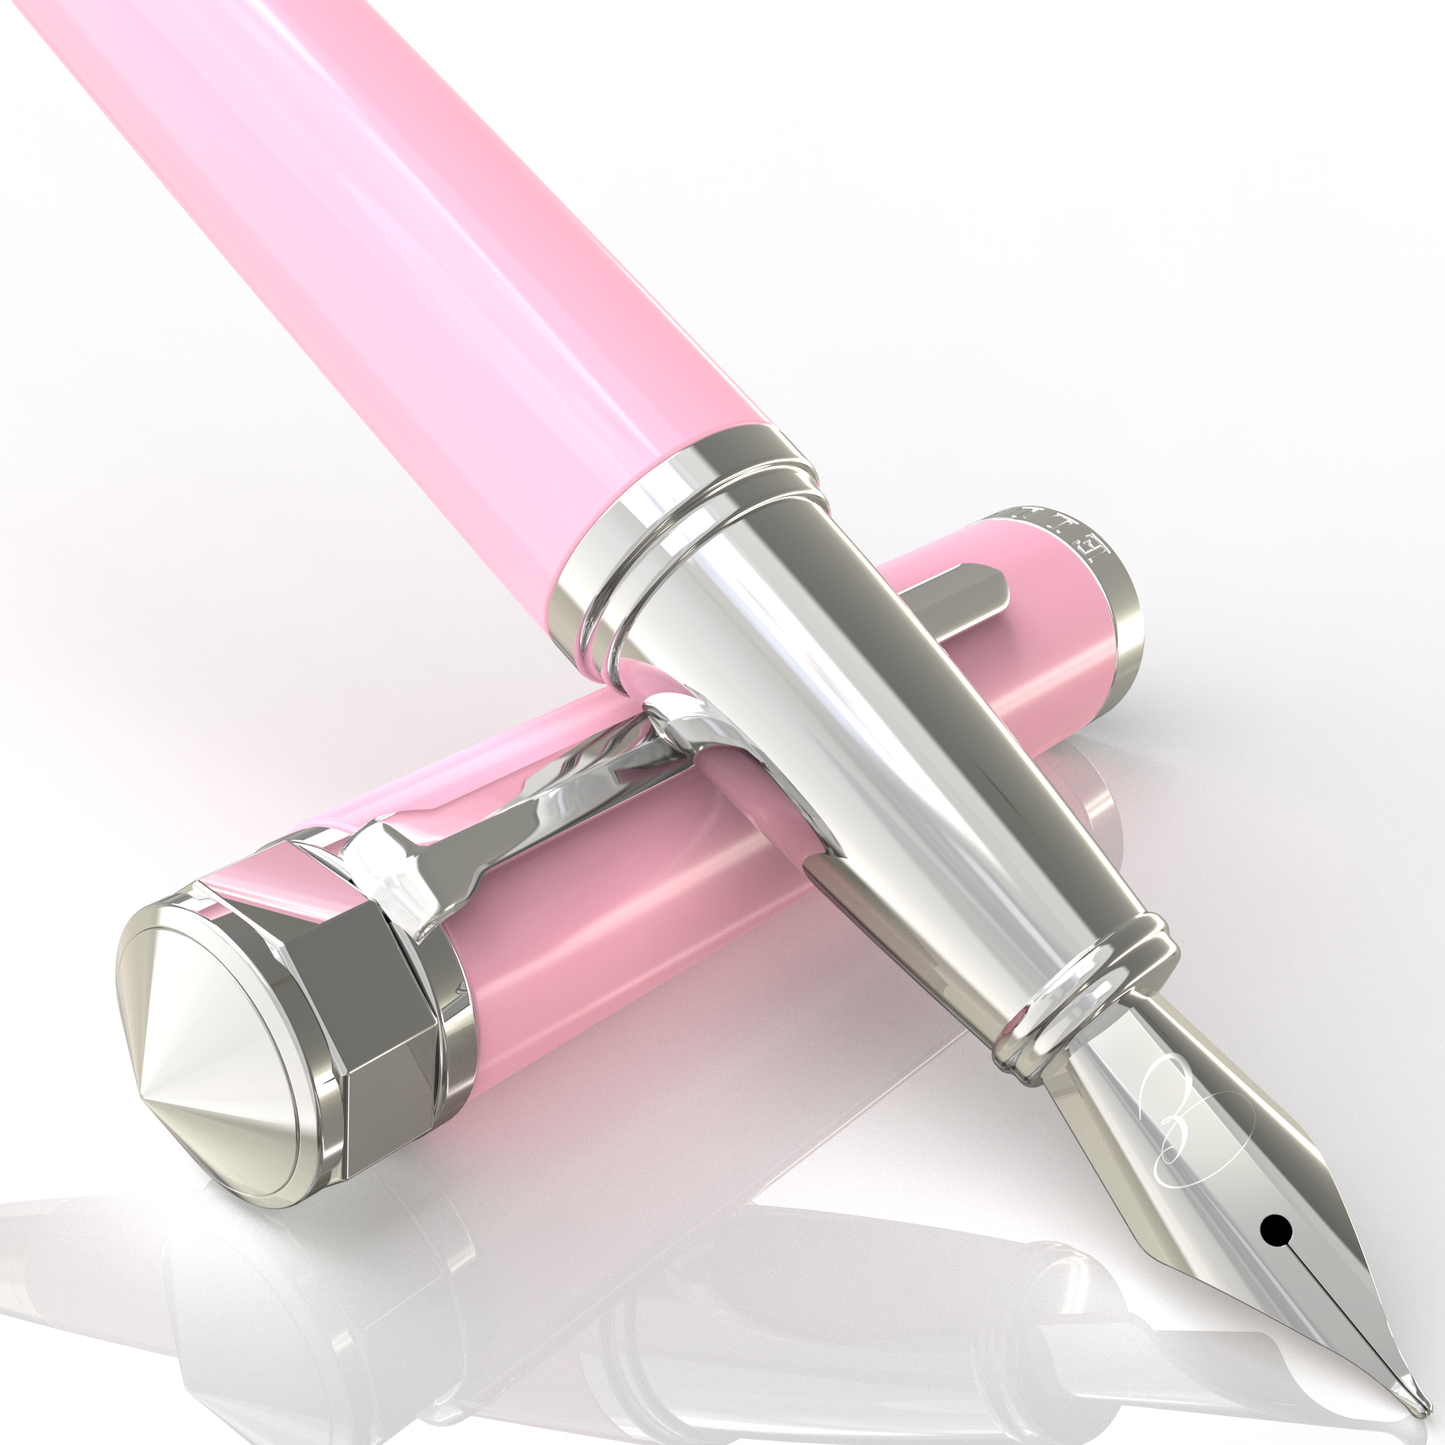 Rosy Flair Fountain Pen